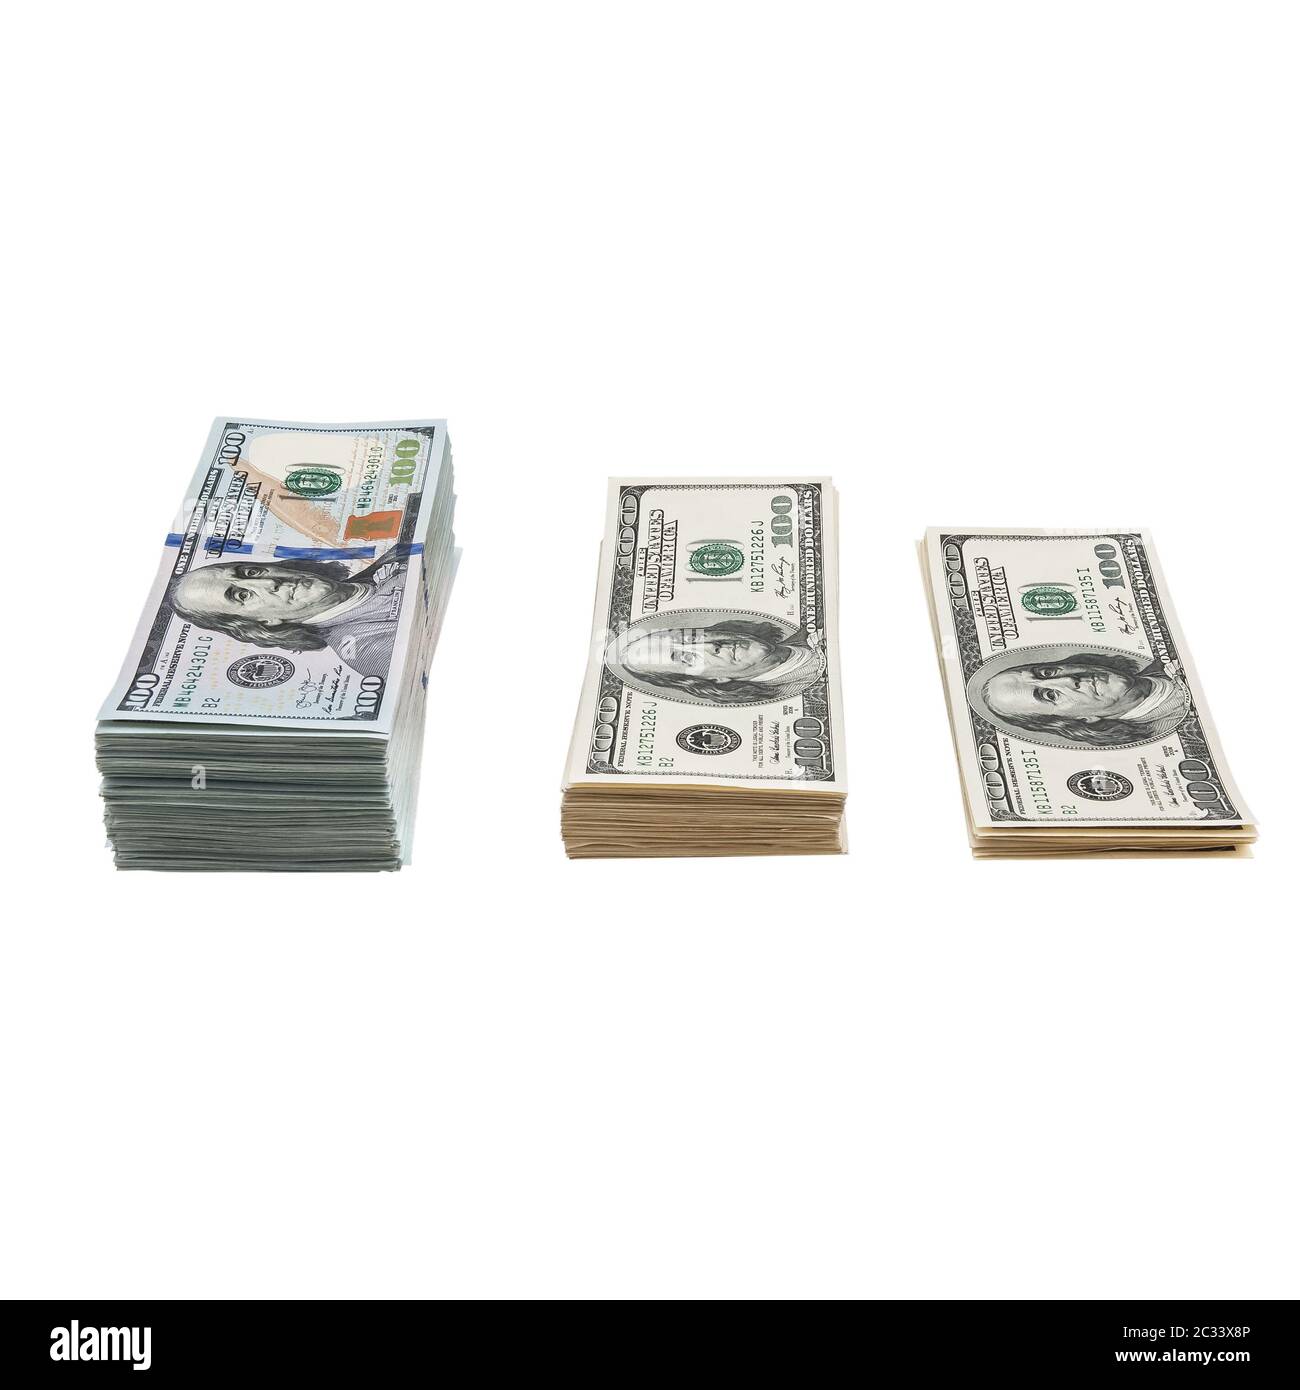 Bundle of US 100 dollars bank notes isolated on white background Stock Photo